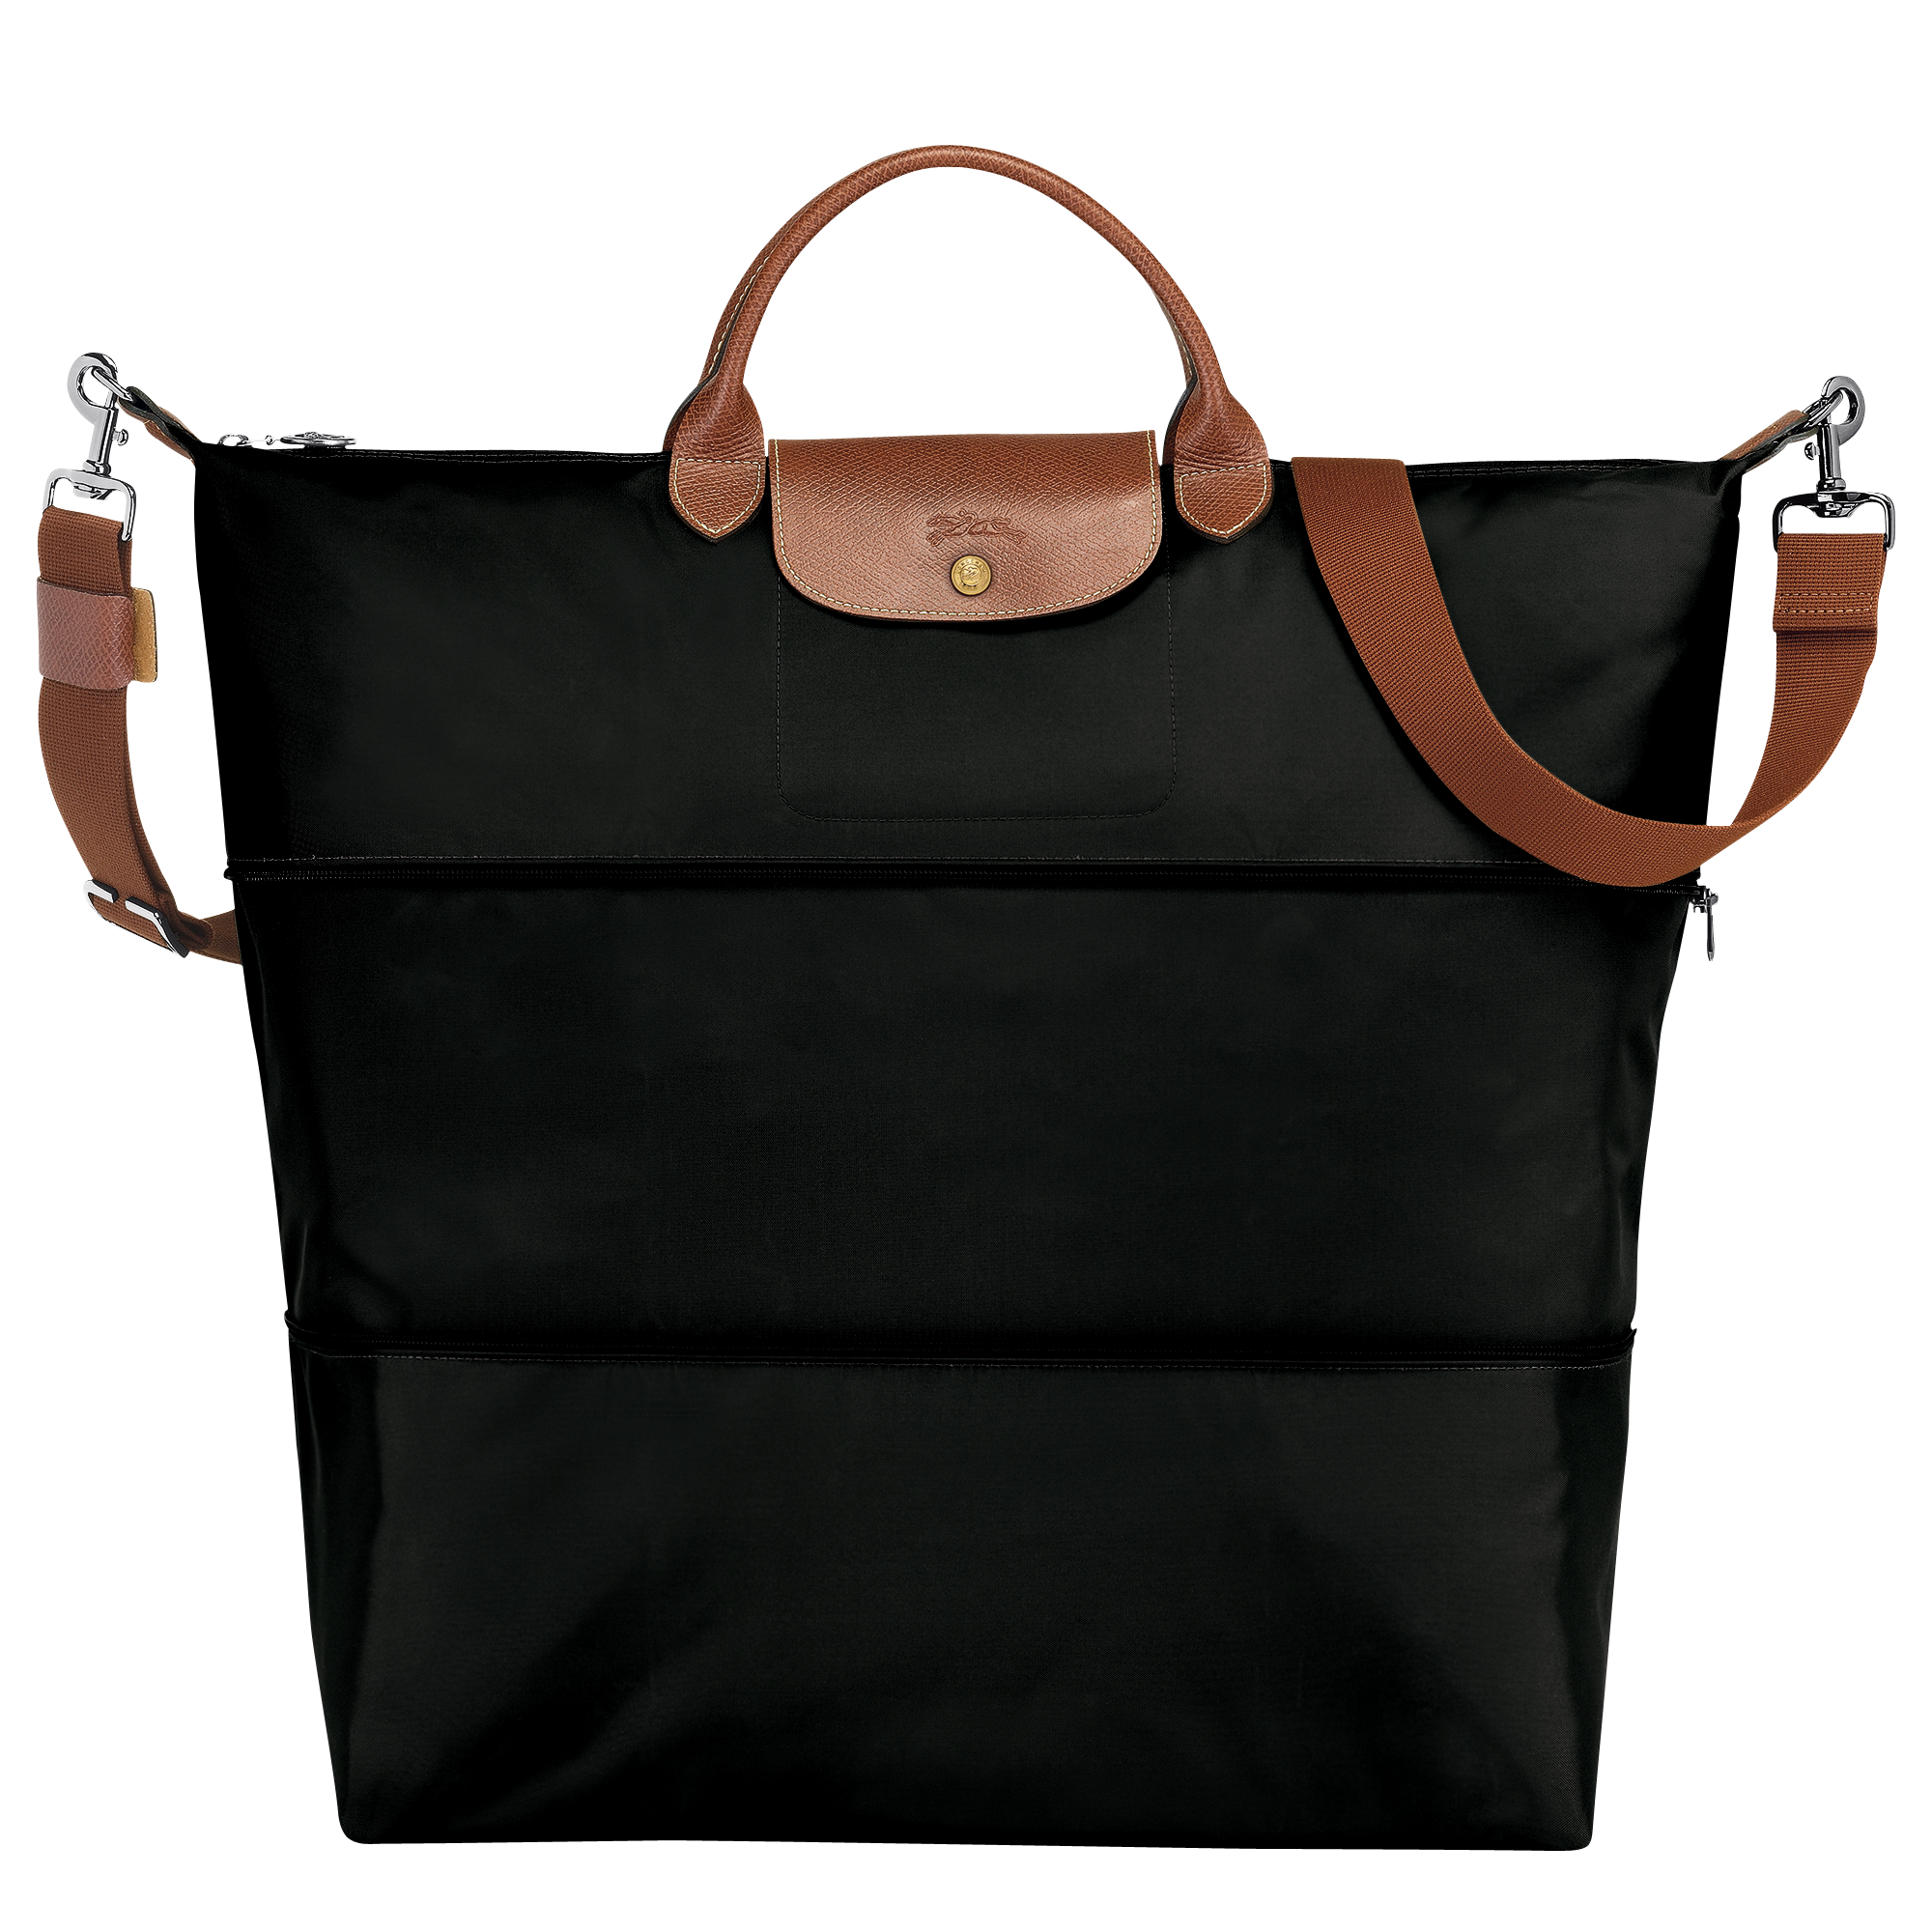 Le Pliage Original 可擴展旅行袋, 黑色